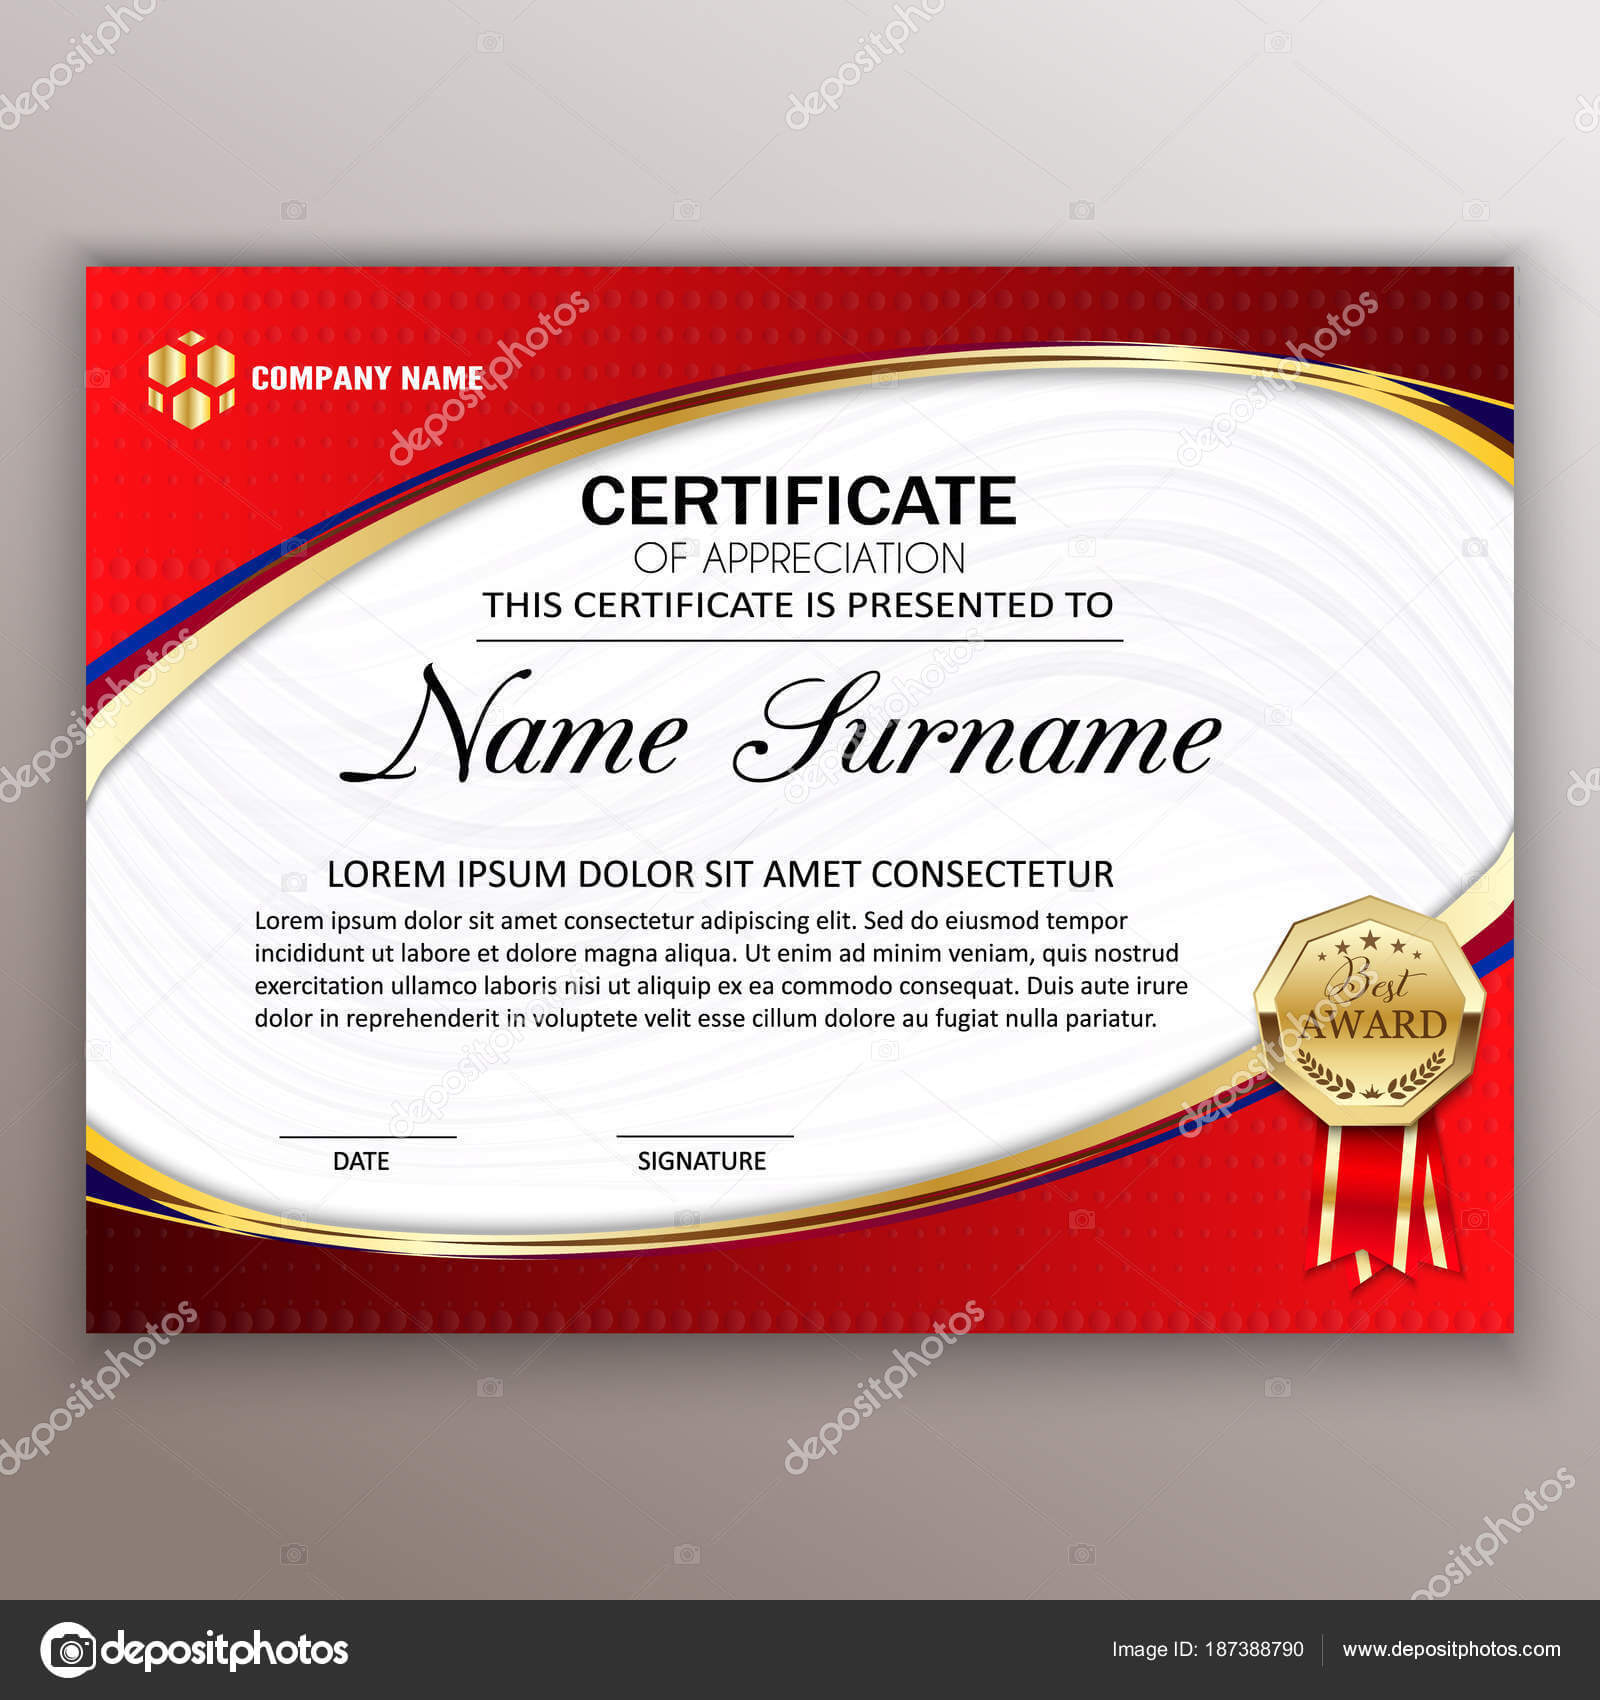 Best Certificate Design | Beautiful Certificate Template In Beautiful Certificate Templates